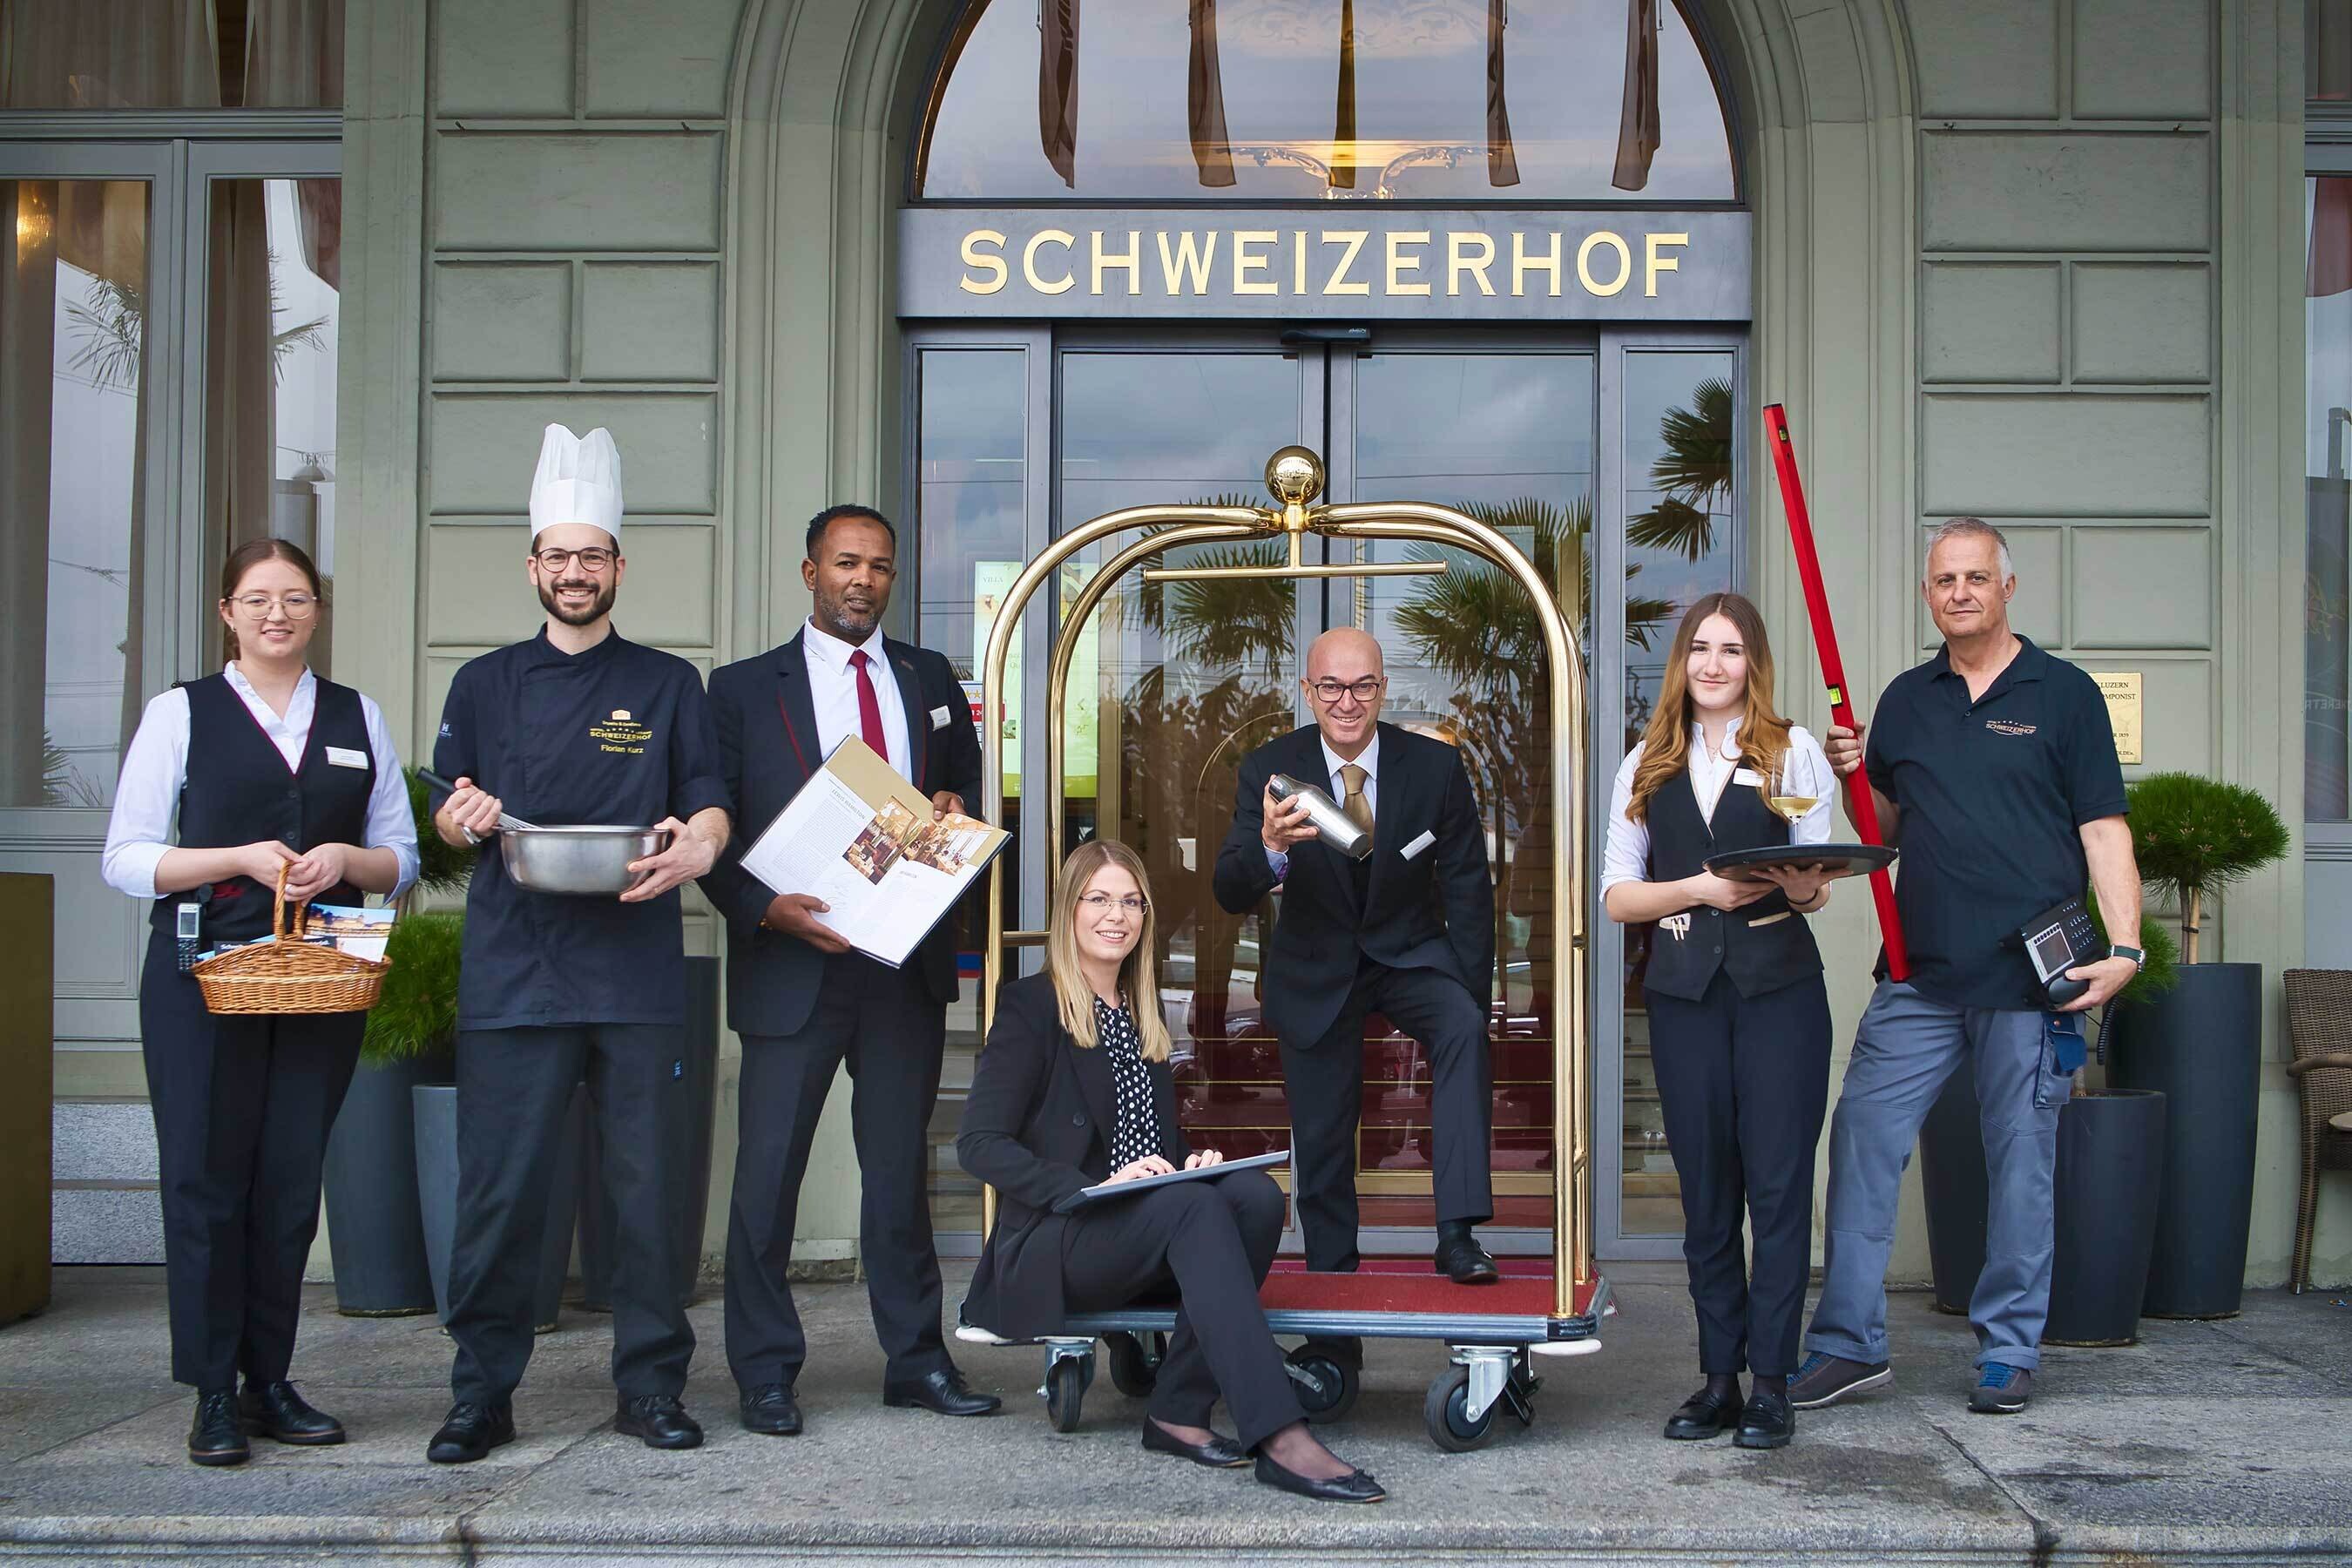 Mitarbeiterfoto team hotel schweizerhof luzern